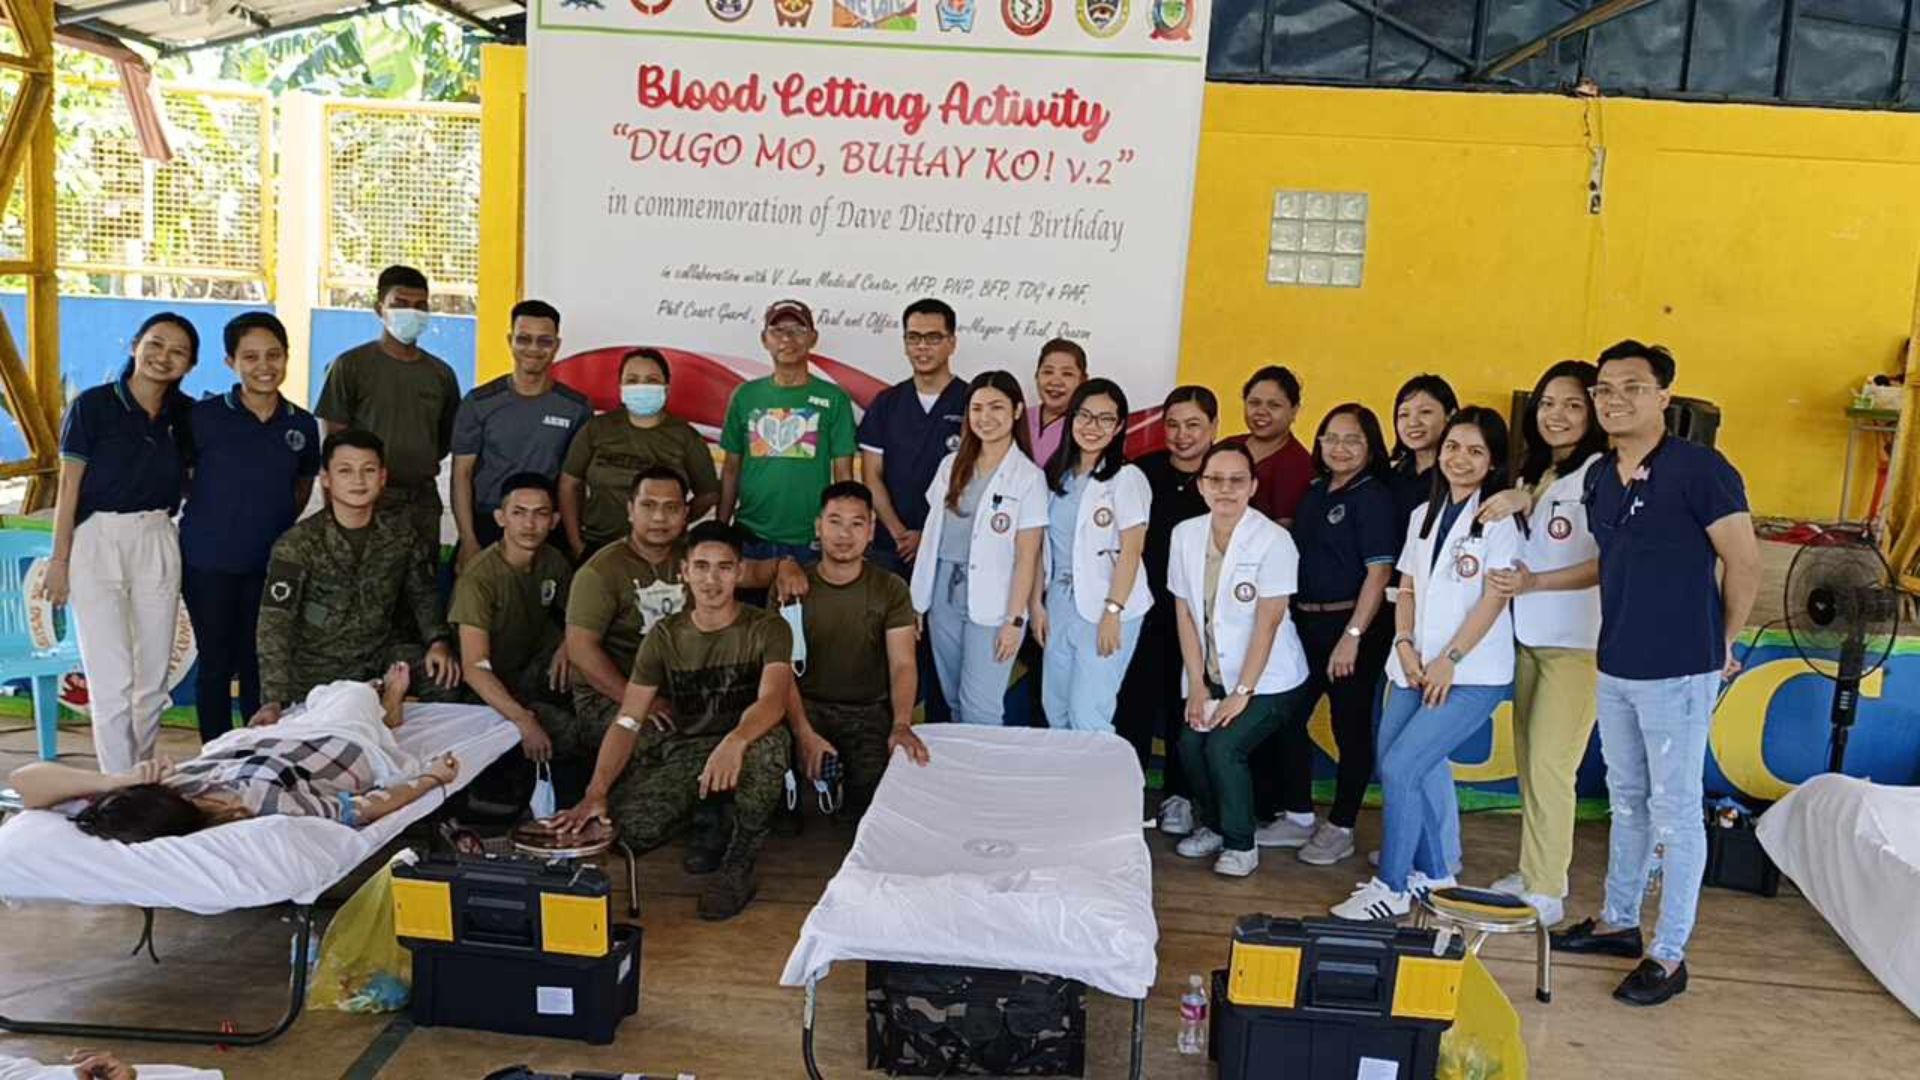 Halos 100 donors nakiisa sa blood letting activity sa Real, Quezon